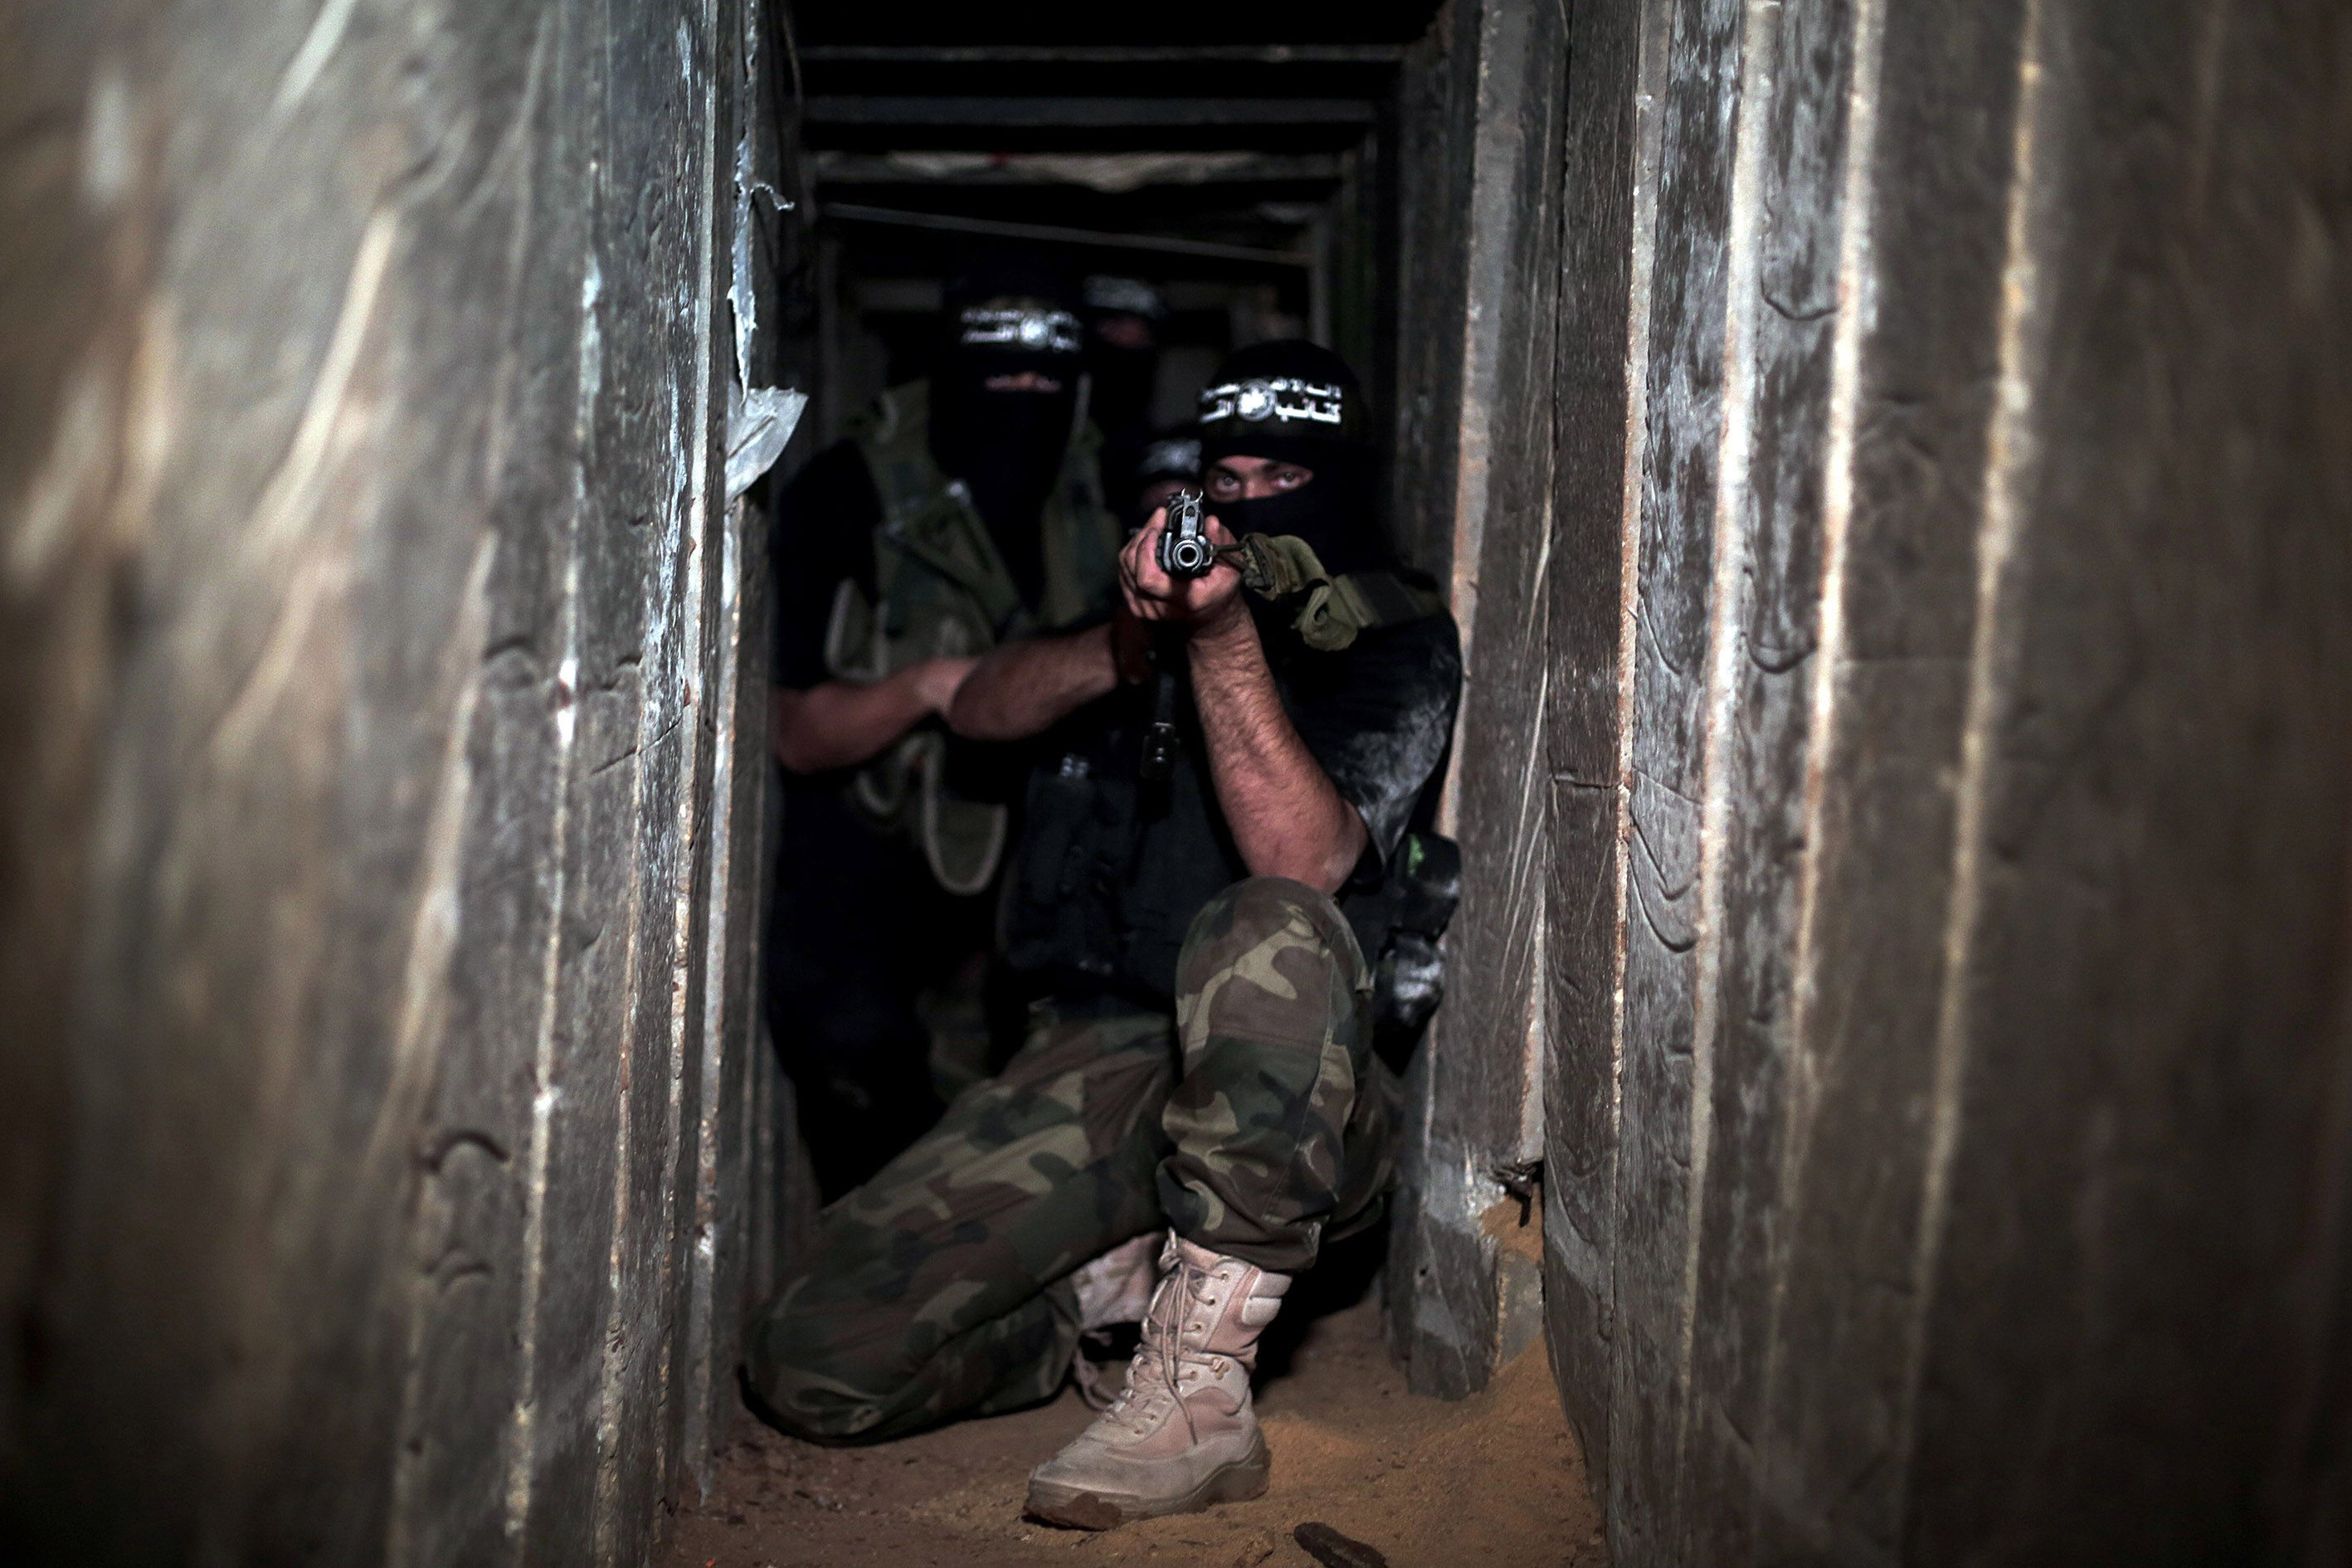 Es wird befürchtet, dass im ausgedehnten unterirdischen Tunnelnetz der Hamas Geiseln festgehalten werden